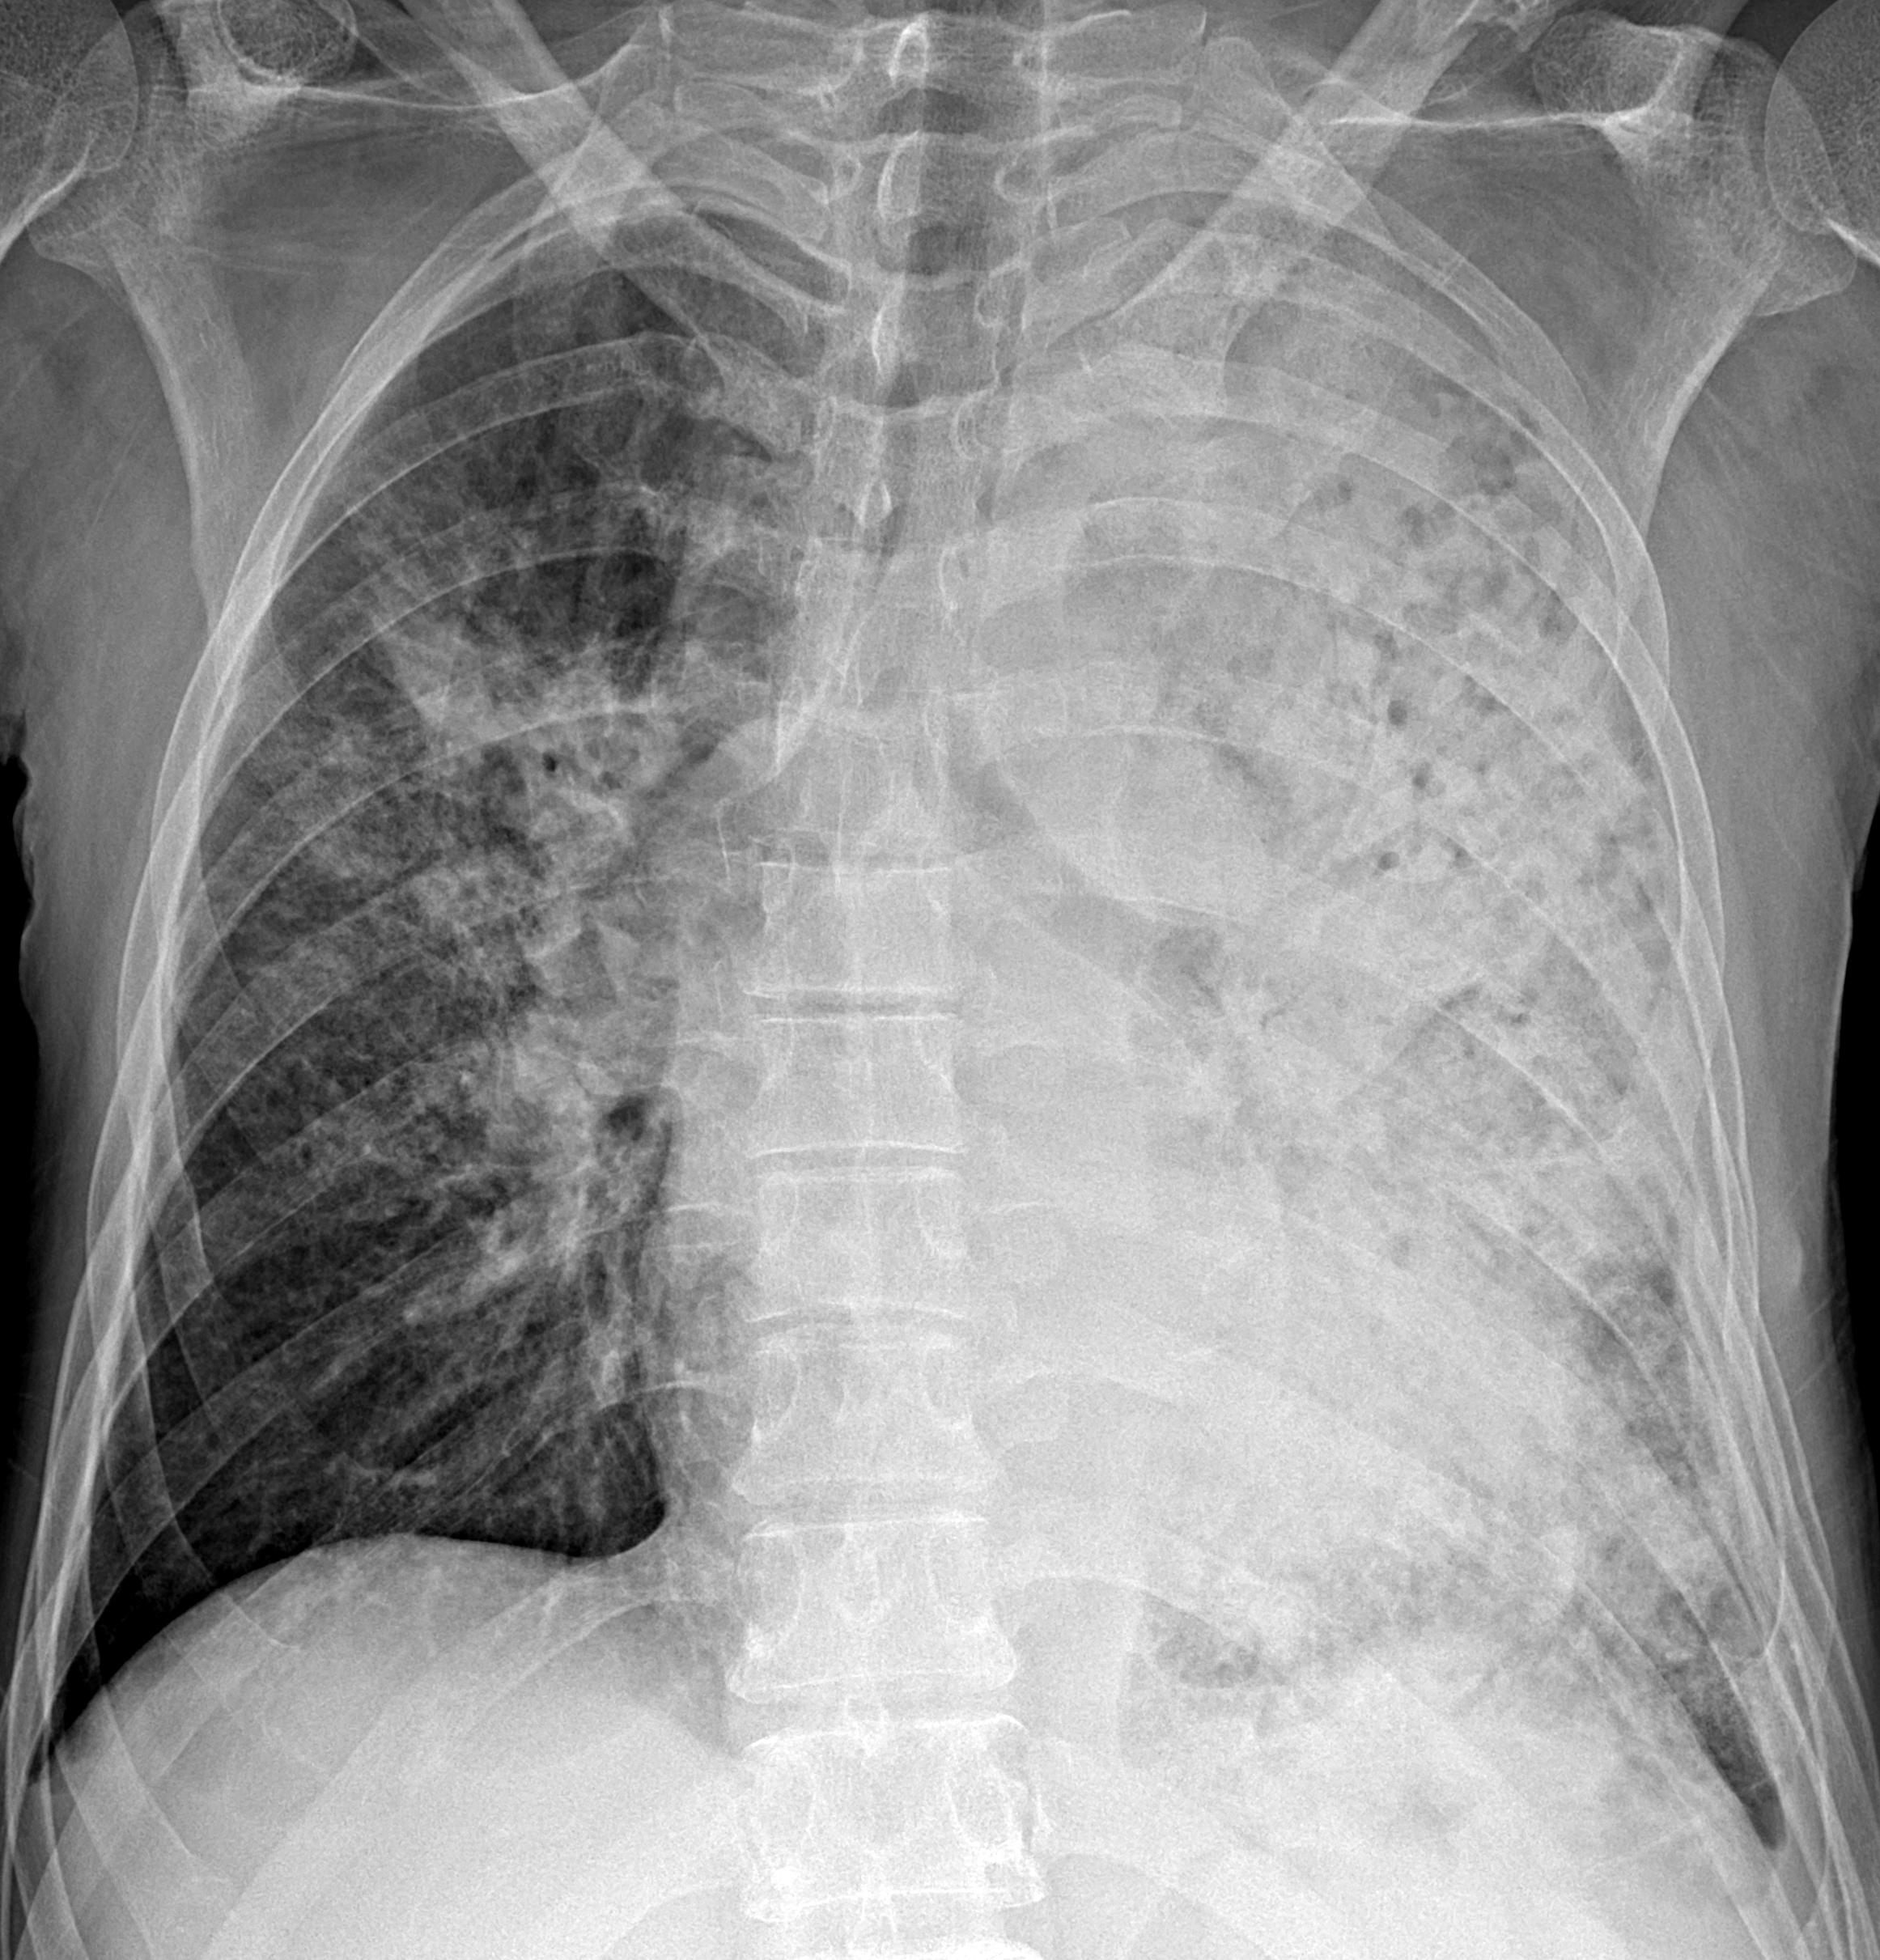 Снимок. Рентген снимок легких с пневмонией. Рентген флюорография пневмония. Пневмония легких рентген снимки. Коронавирус пневмония рентген.